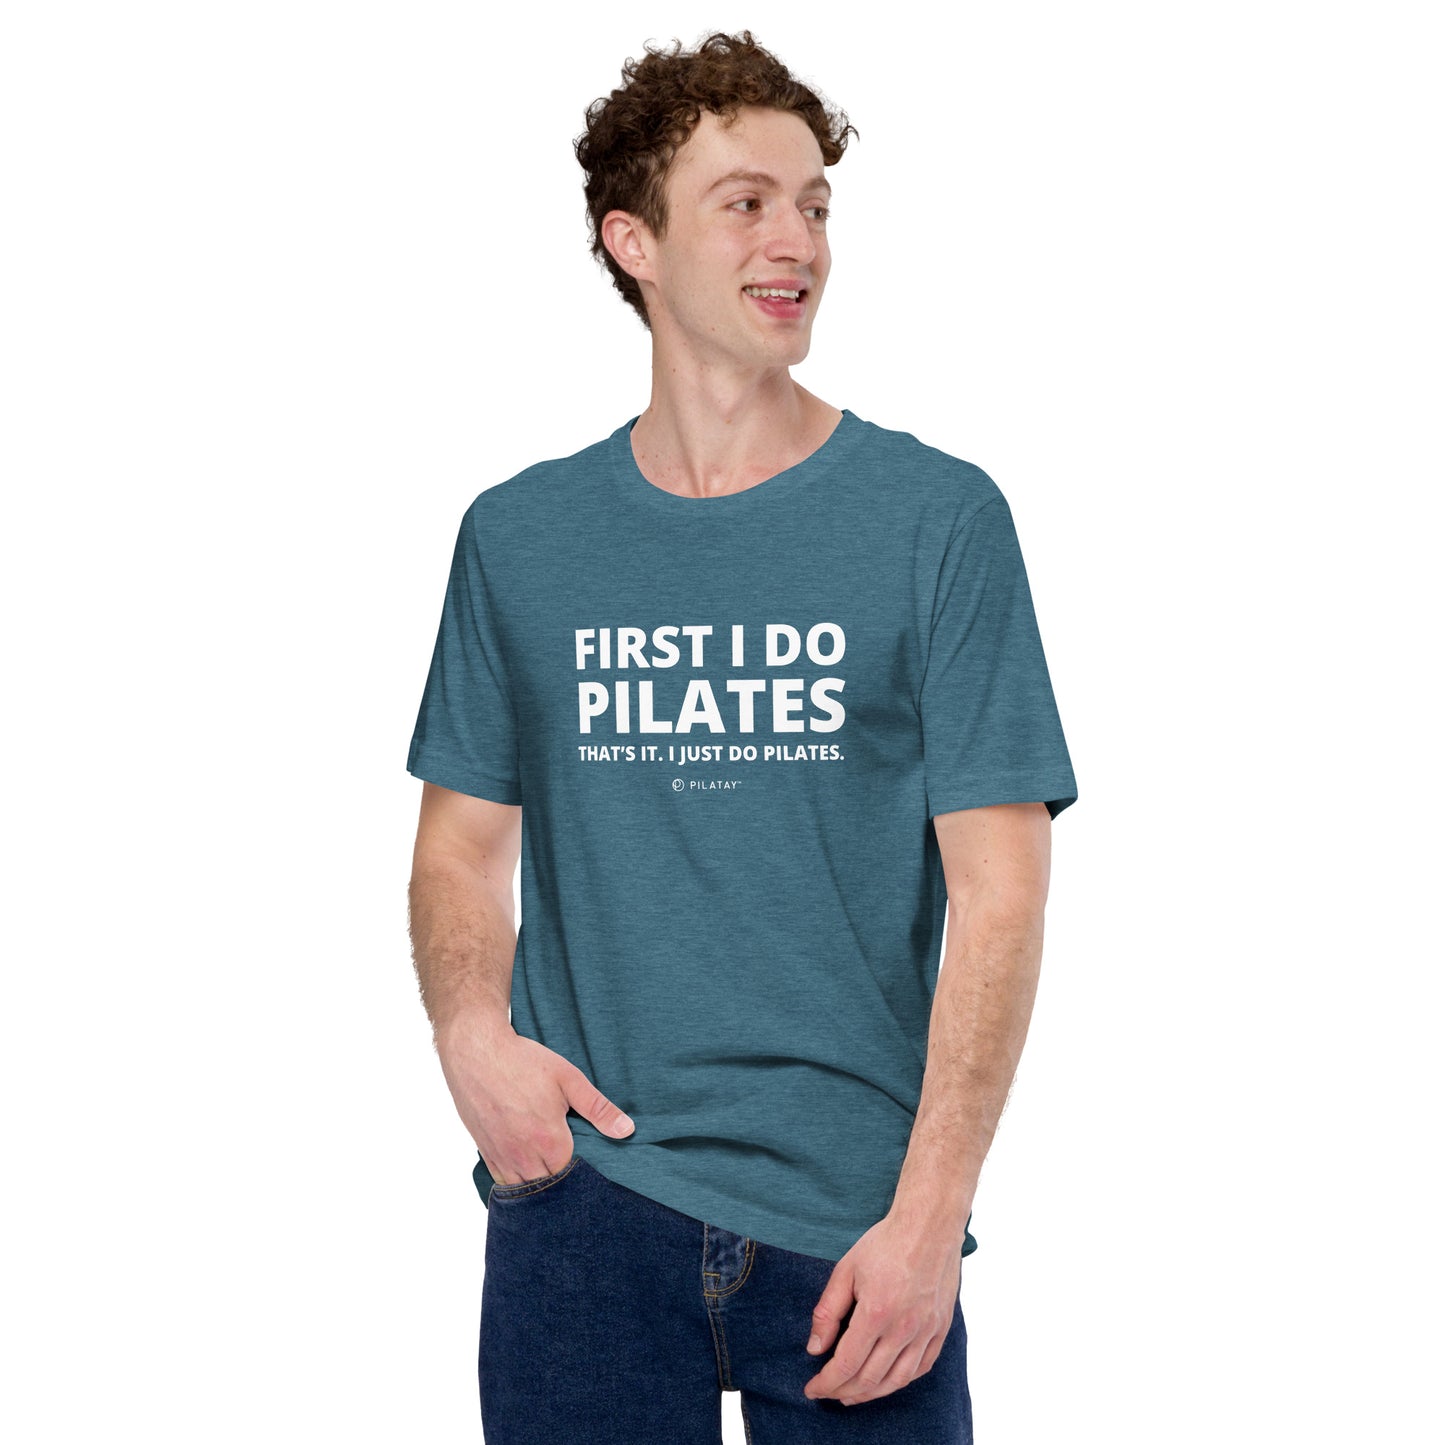 I Just Do Pilates - Unisex Tee